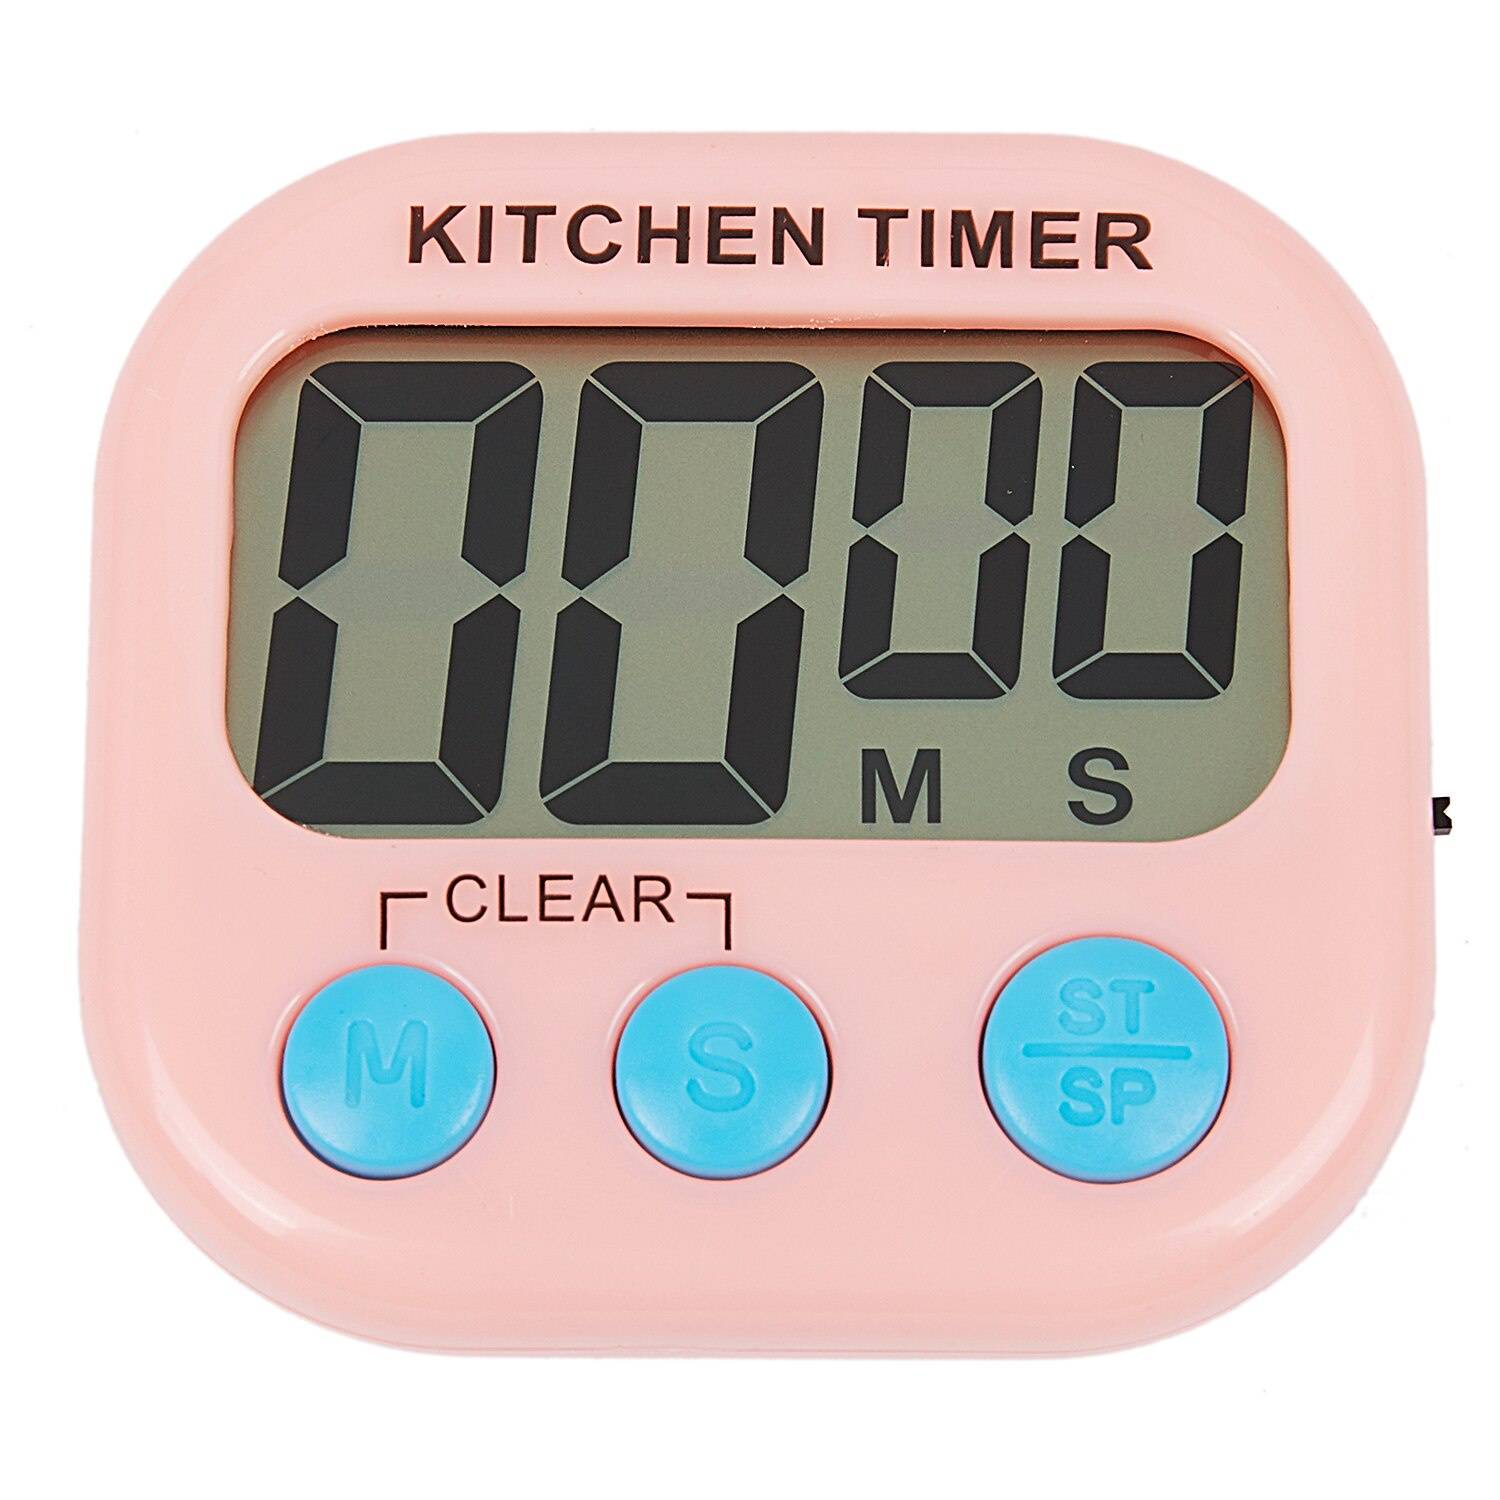 Как выбрать настенные часы на кухню в зависимости от стилевого решения